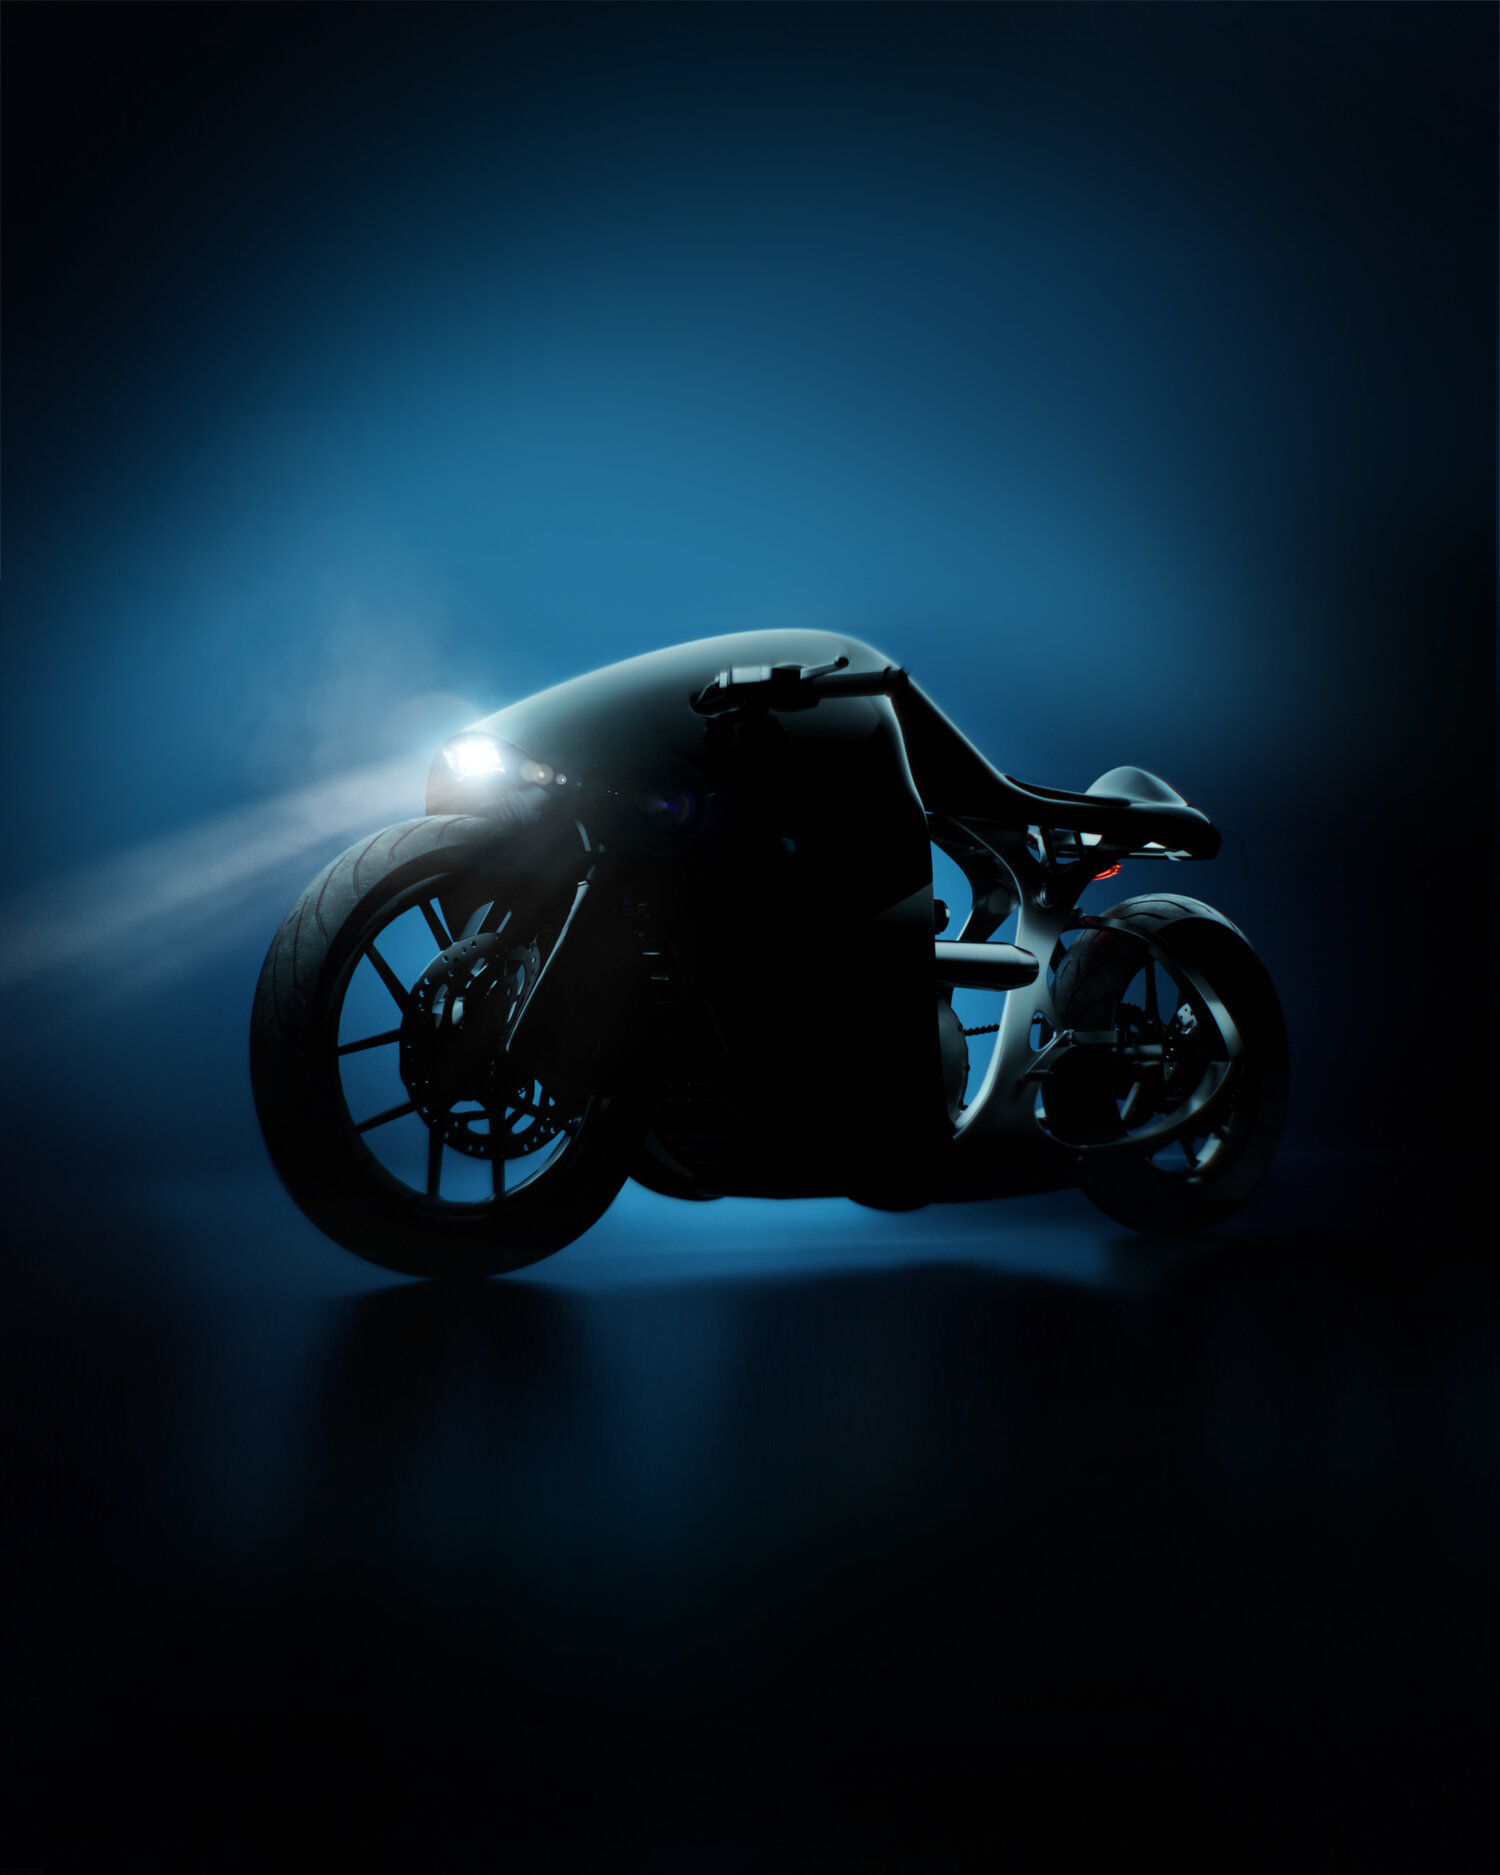 imagen 11 de The Supermarine. La nueva y espectacular motocicleta de Bandit9.